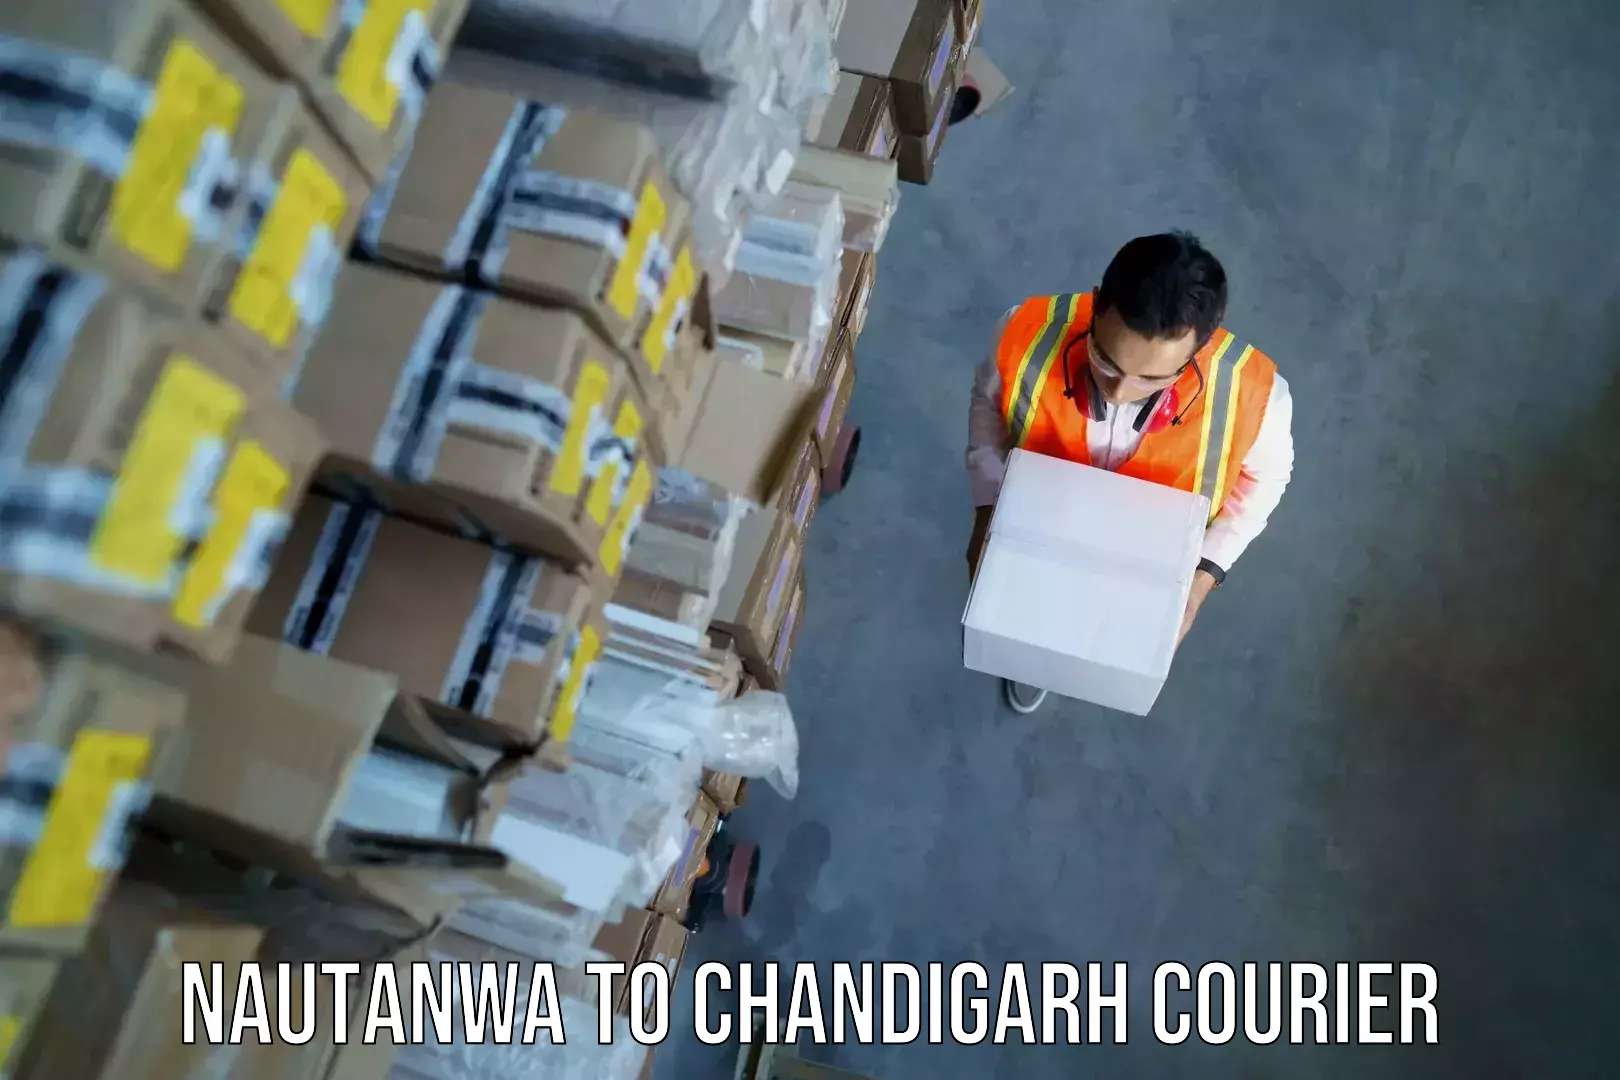 Baggage transport scheduler Nautanwa to Chandigarh